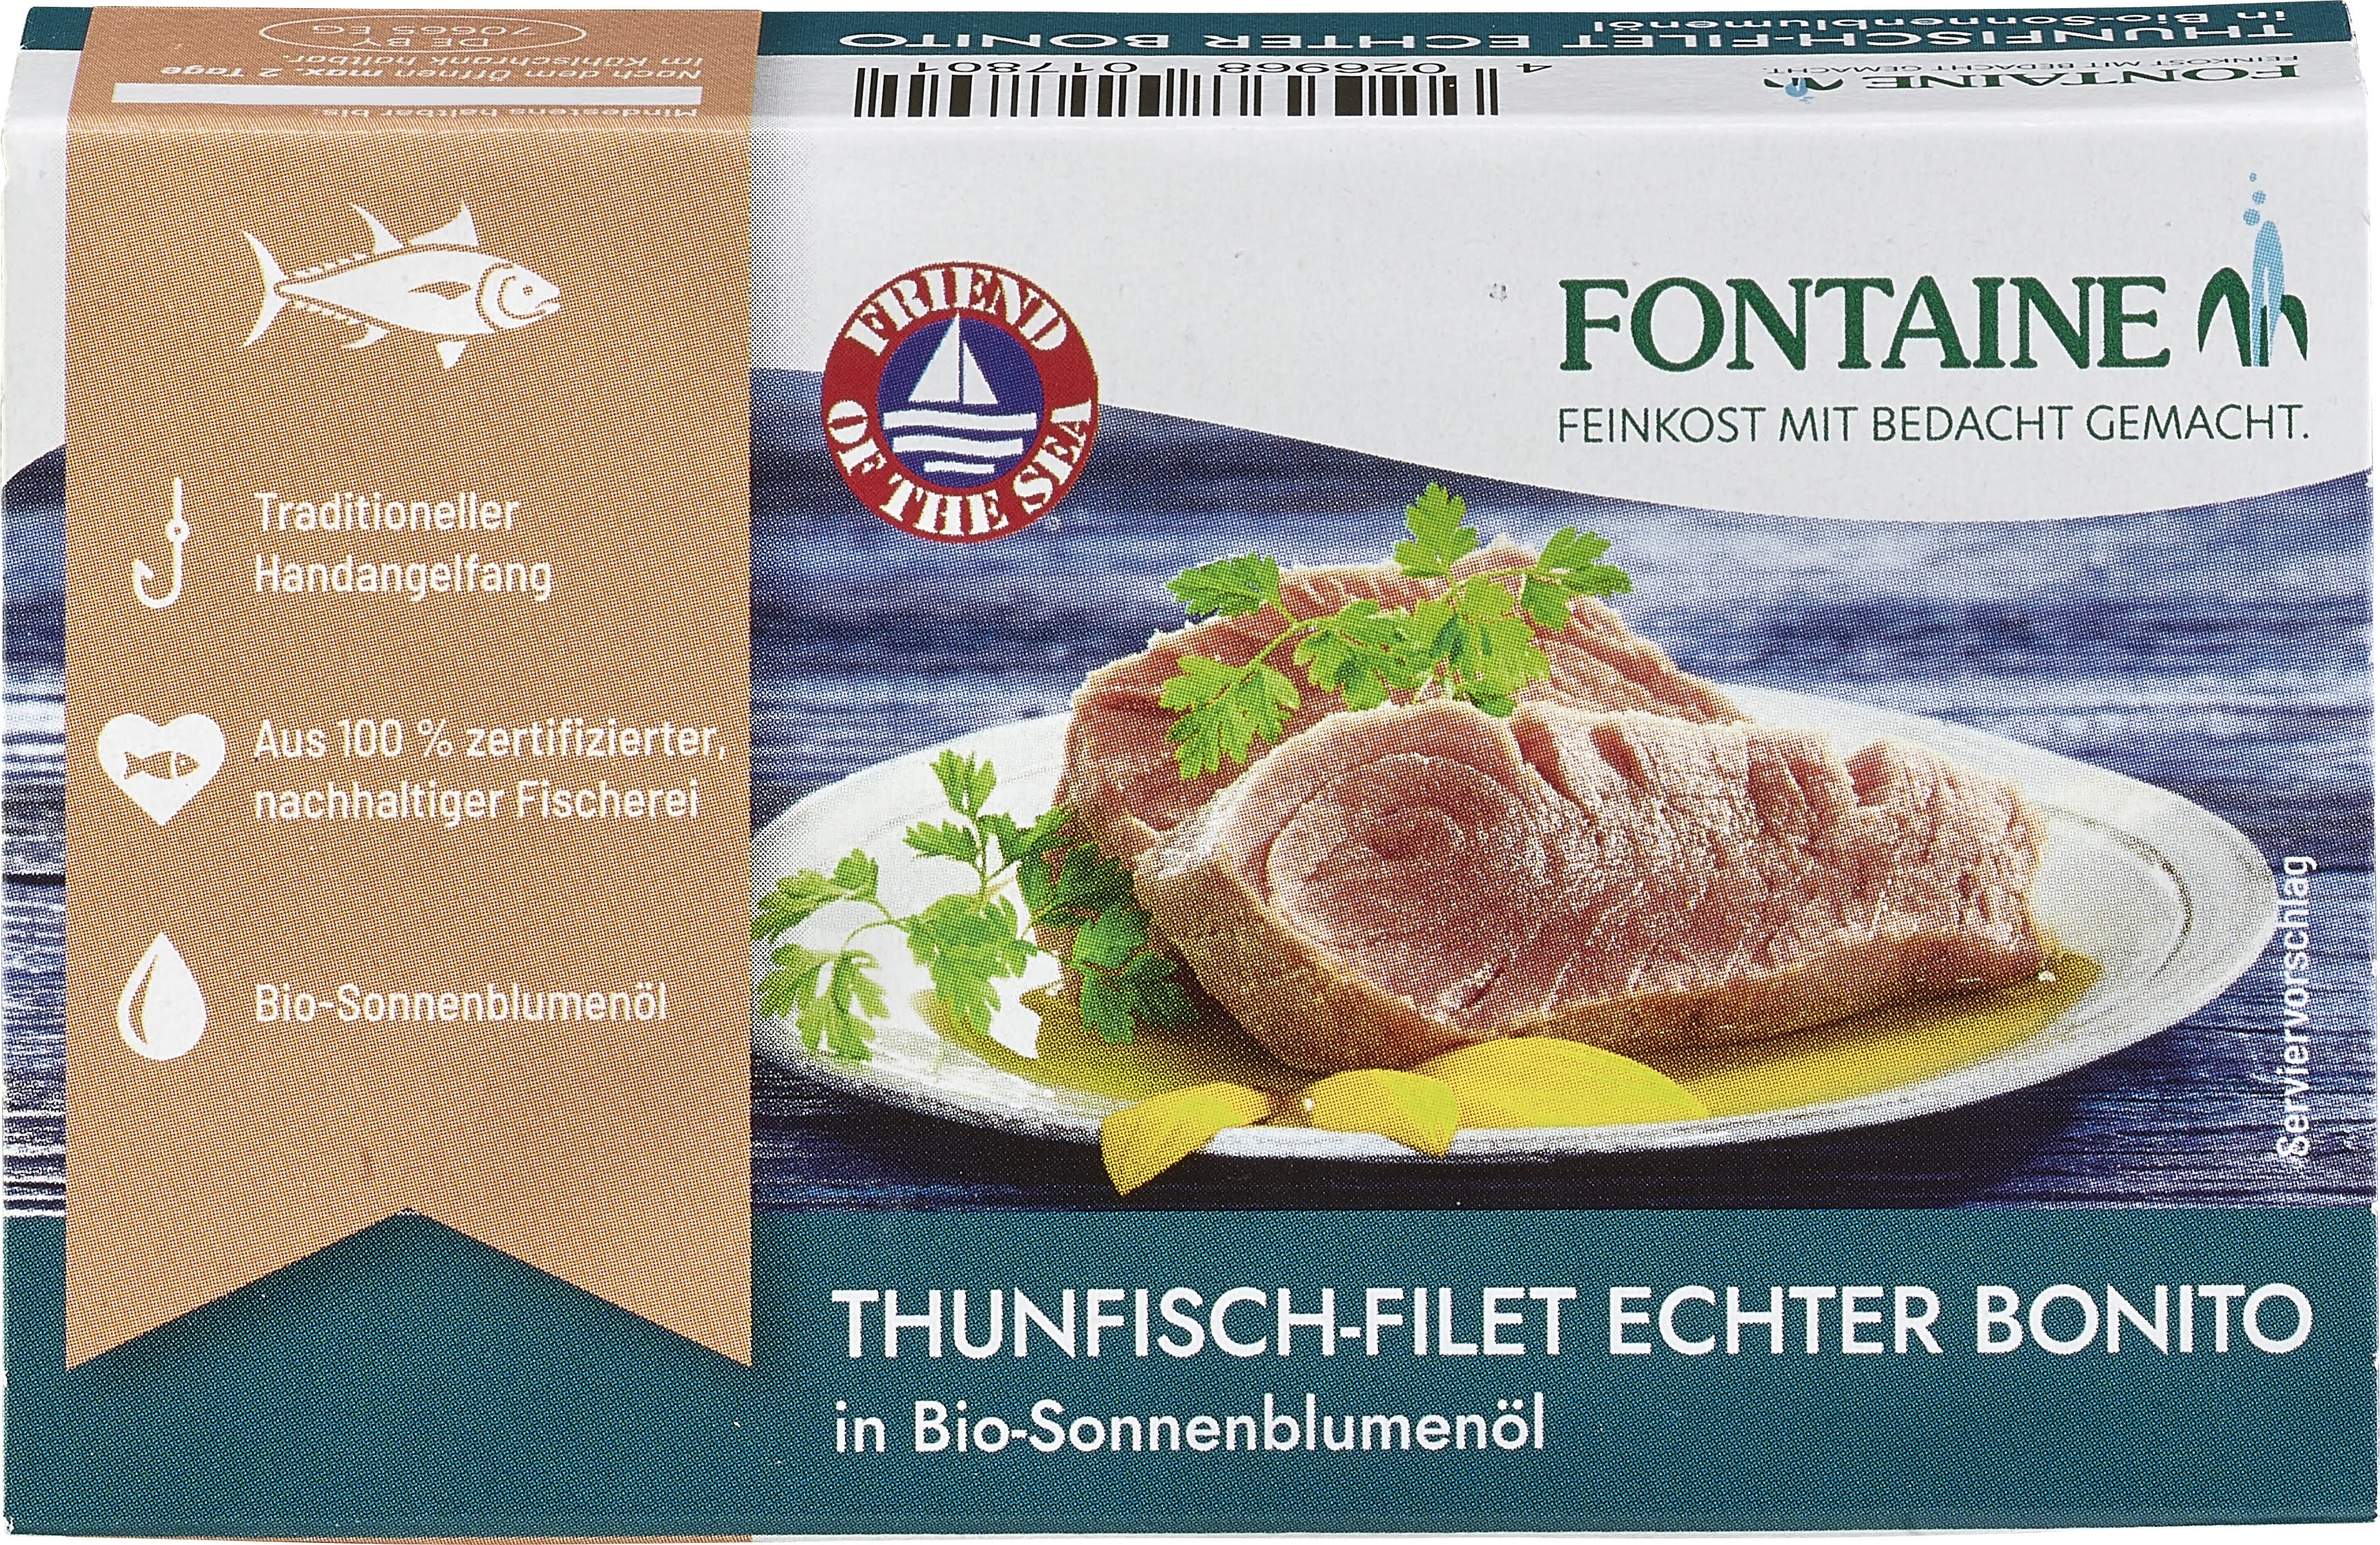 Heller Thunfisch Echter Bonito in Bio-Sonnenblumenöl